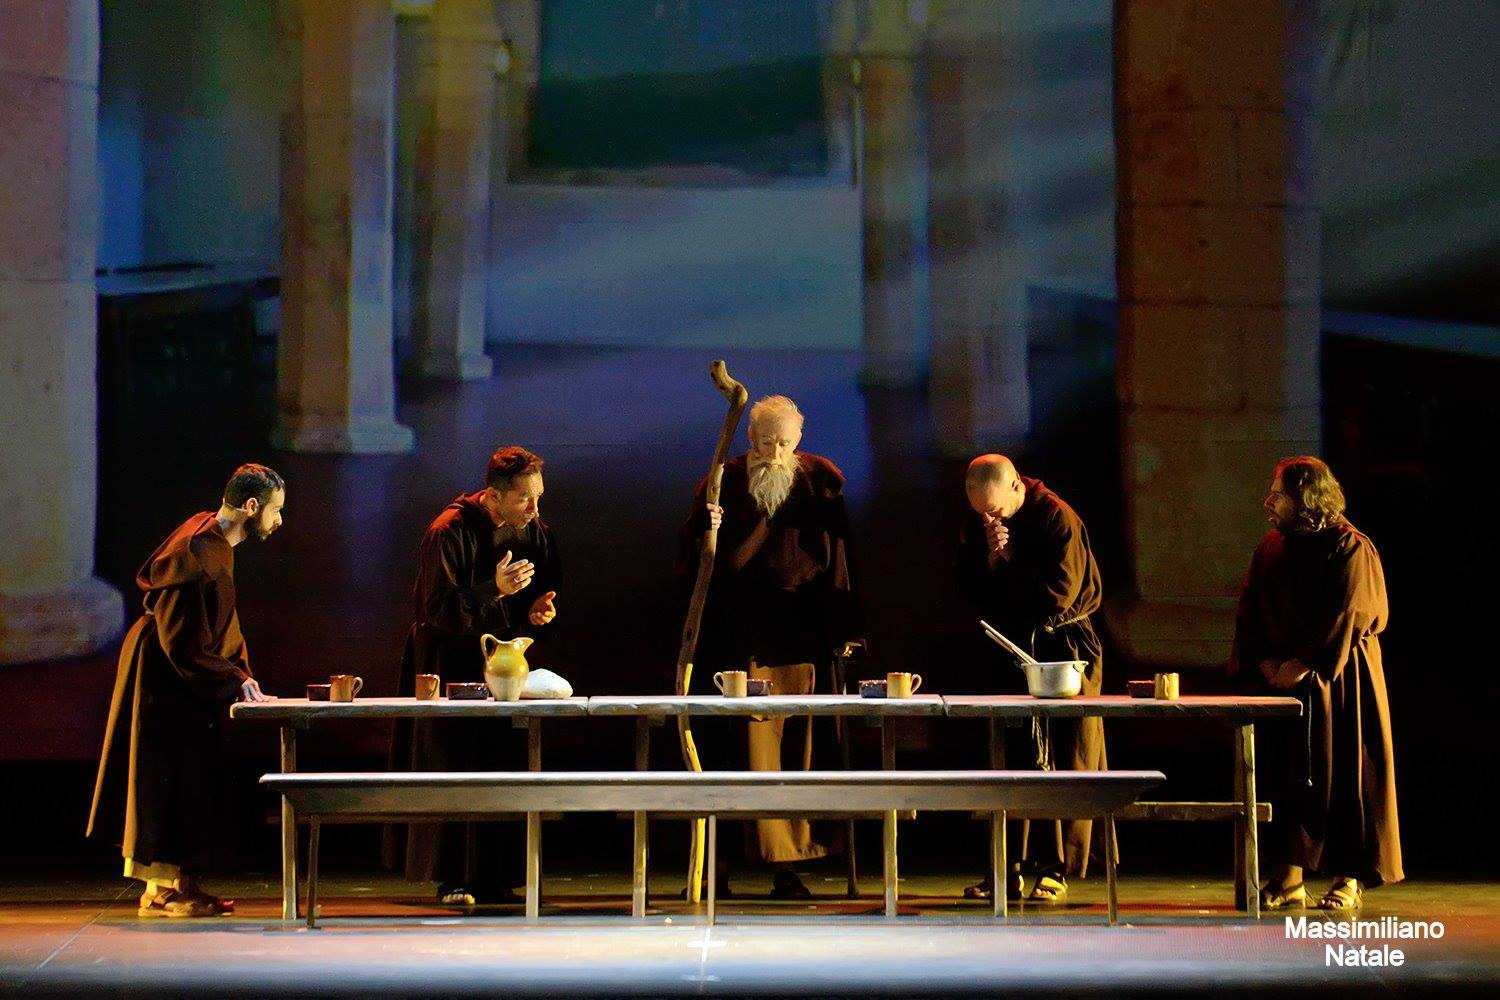 Il Colossal Musical “Francesco de Paola l’Opera” Domani 4 aprile su Teleuropa Network